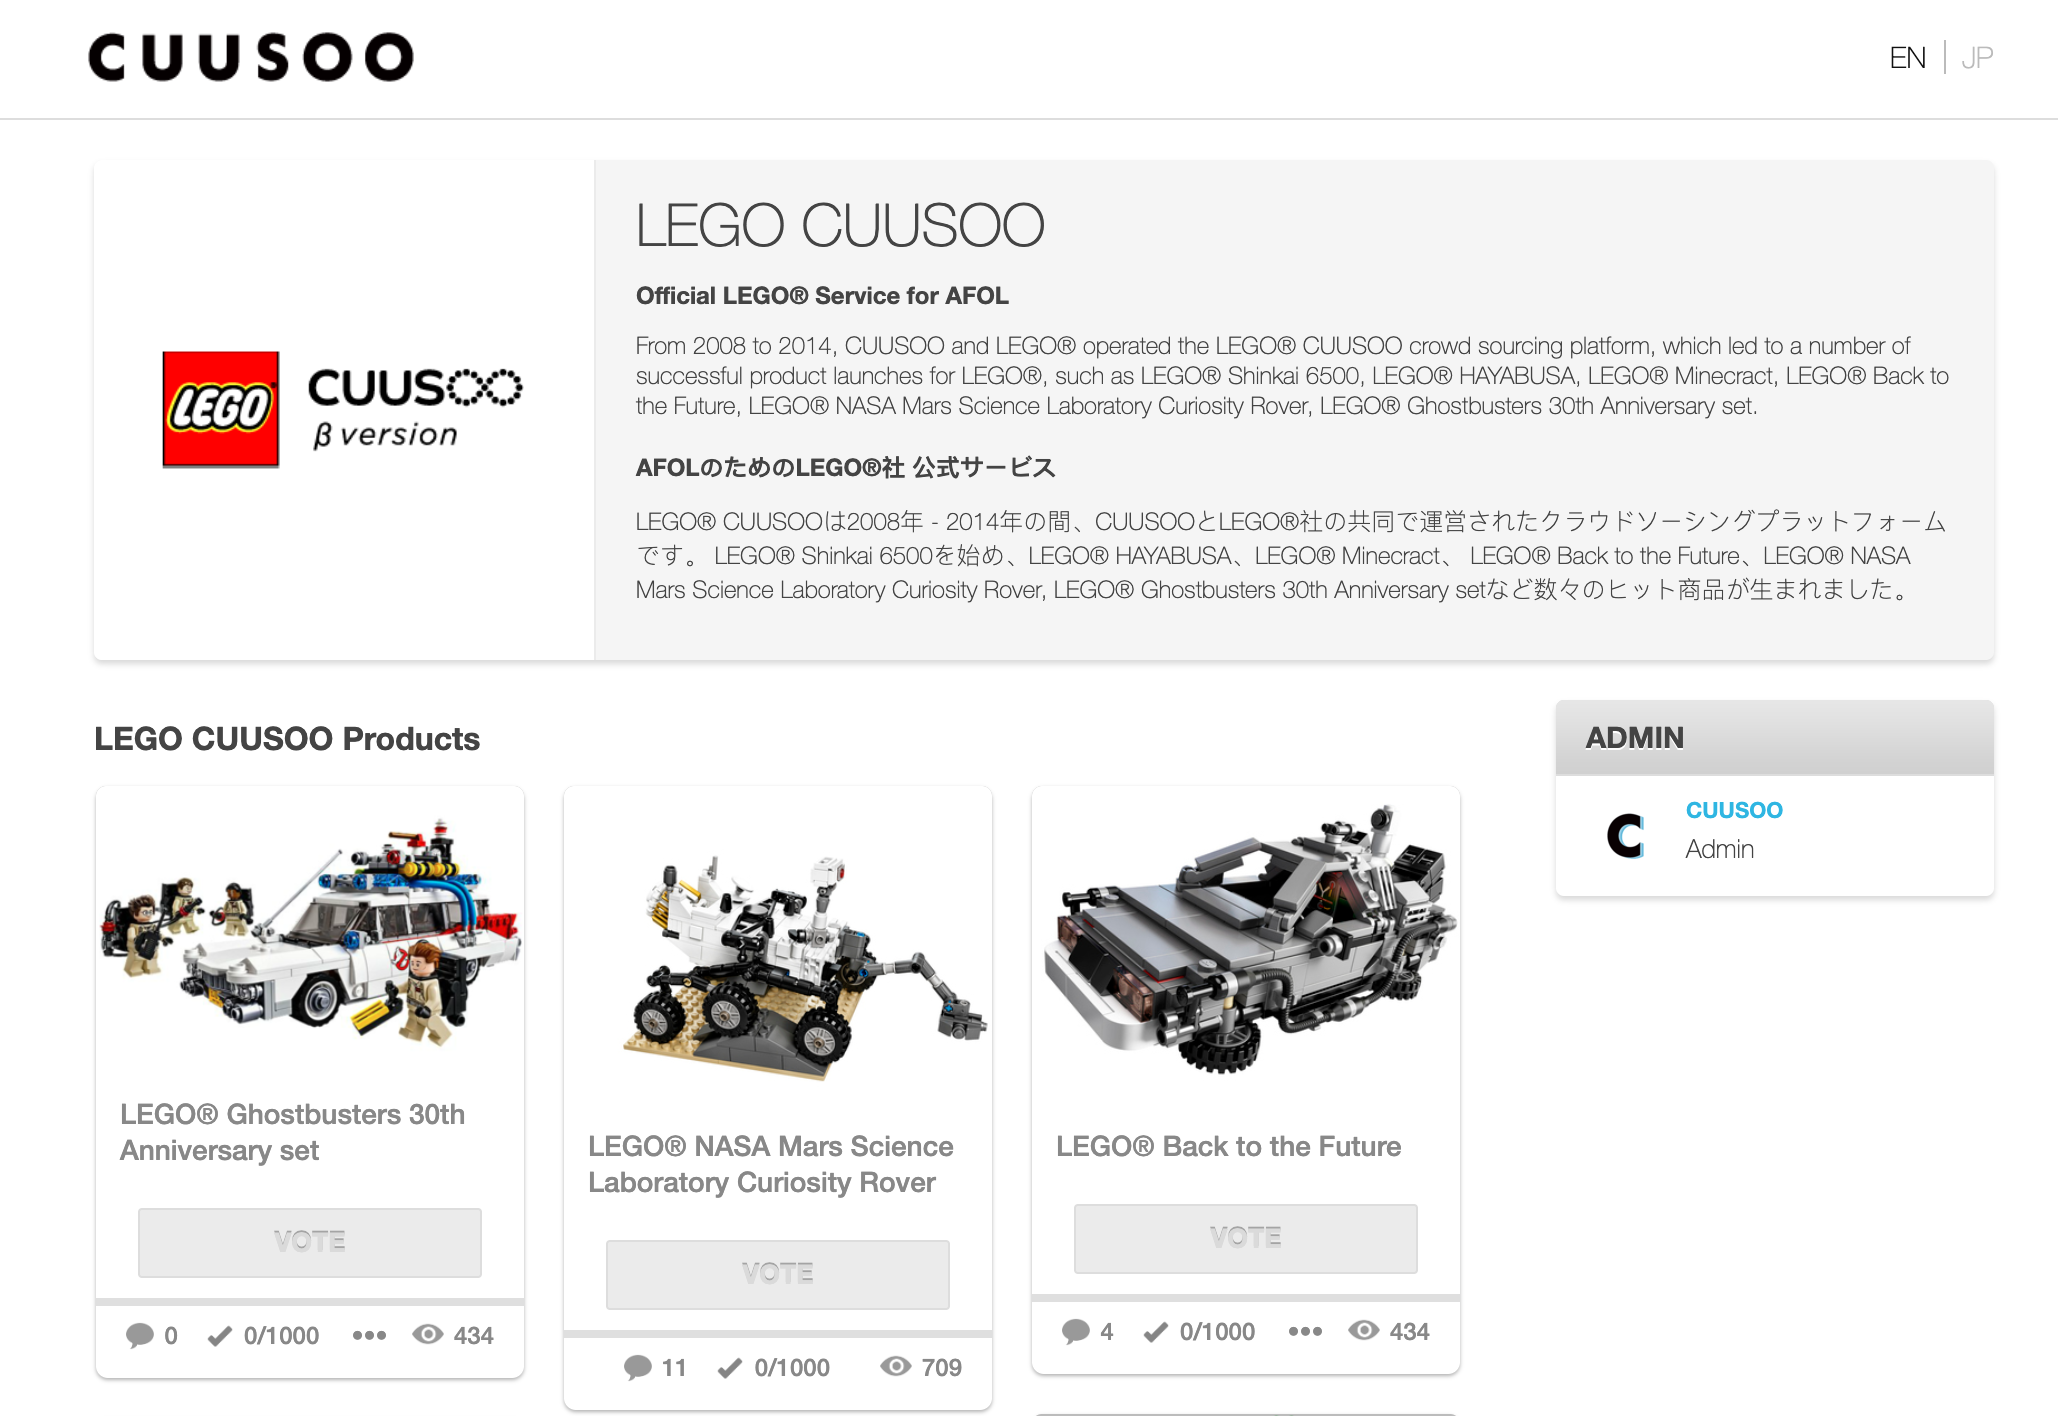 CUUSOO website